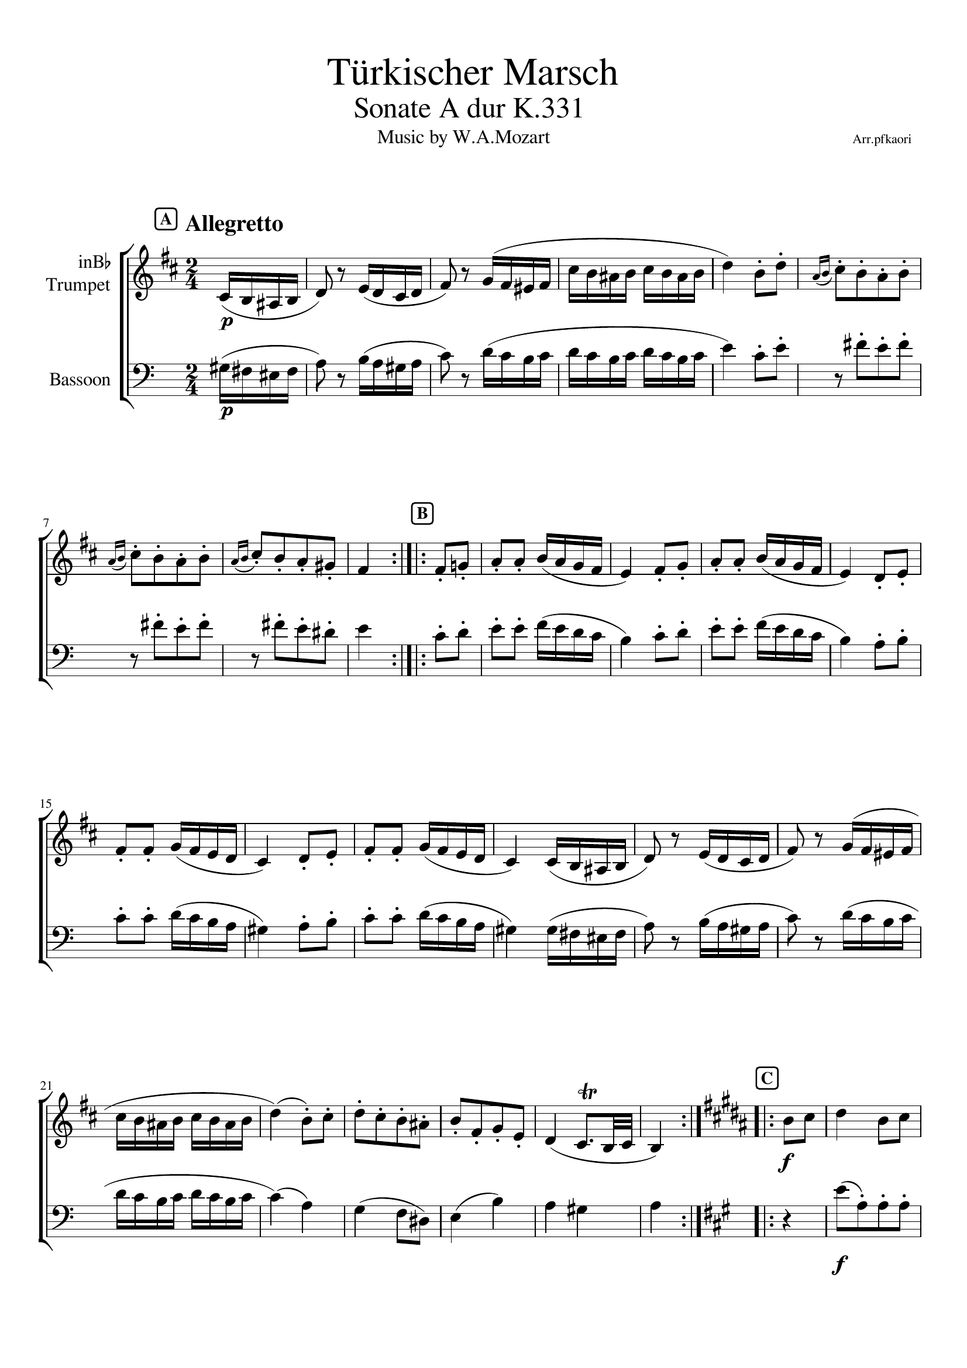 Mozart - Turkish March K.331 (Trumpet & Bassoon /unaccompanied) by pfkaori